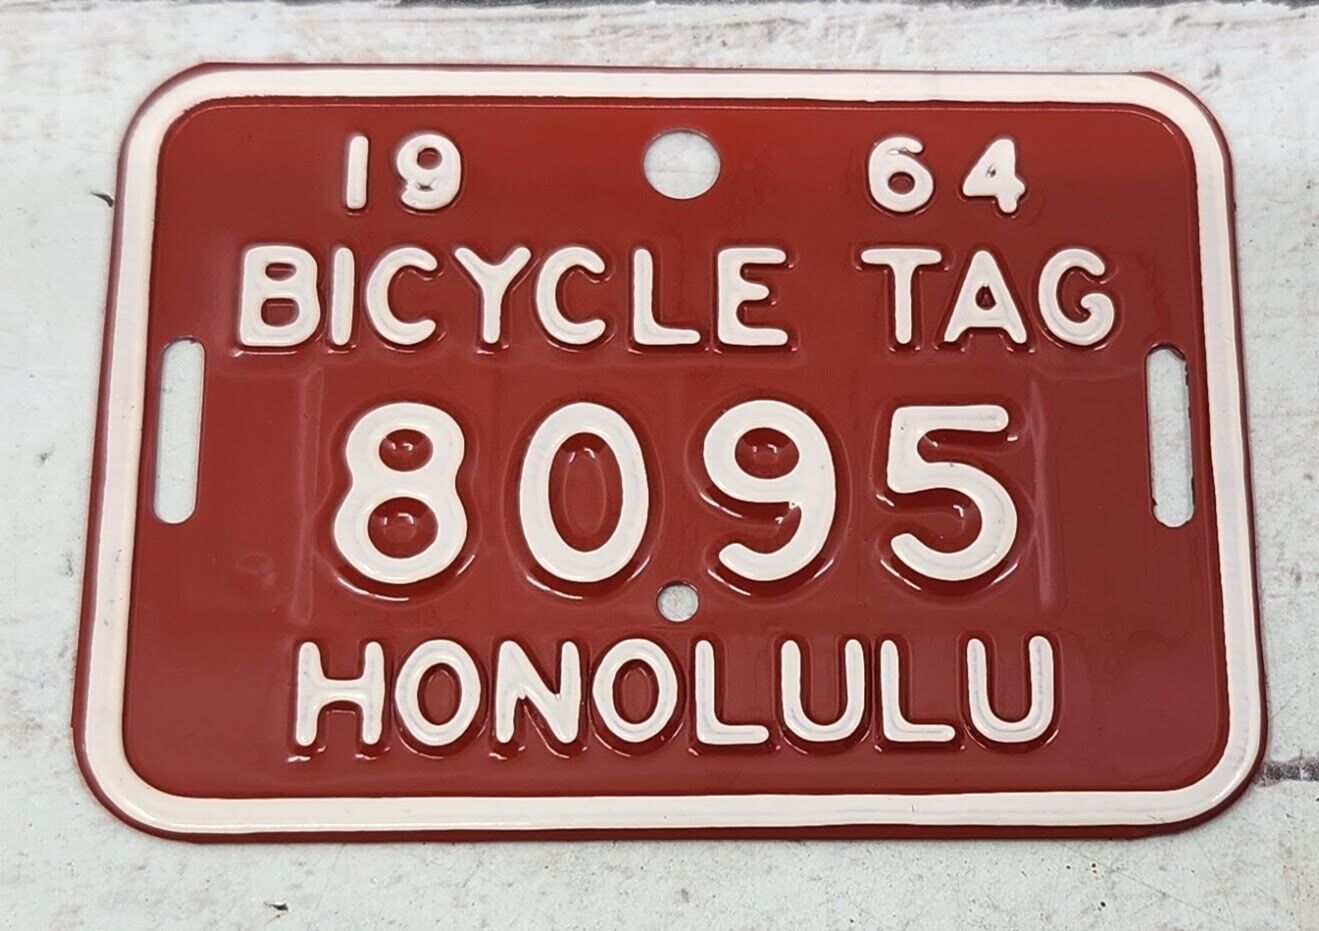 Vintage 1964 Bicycle License Plate Tag Honolulu Hawaii 8095